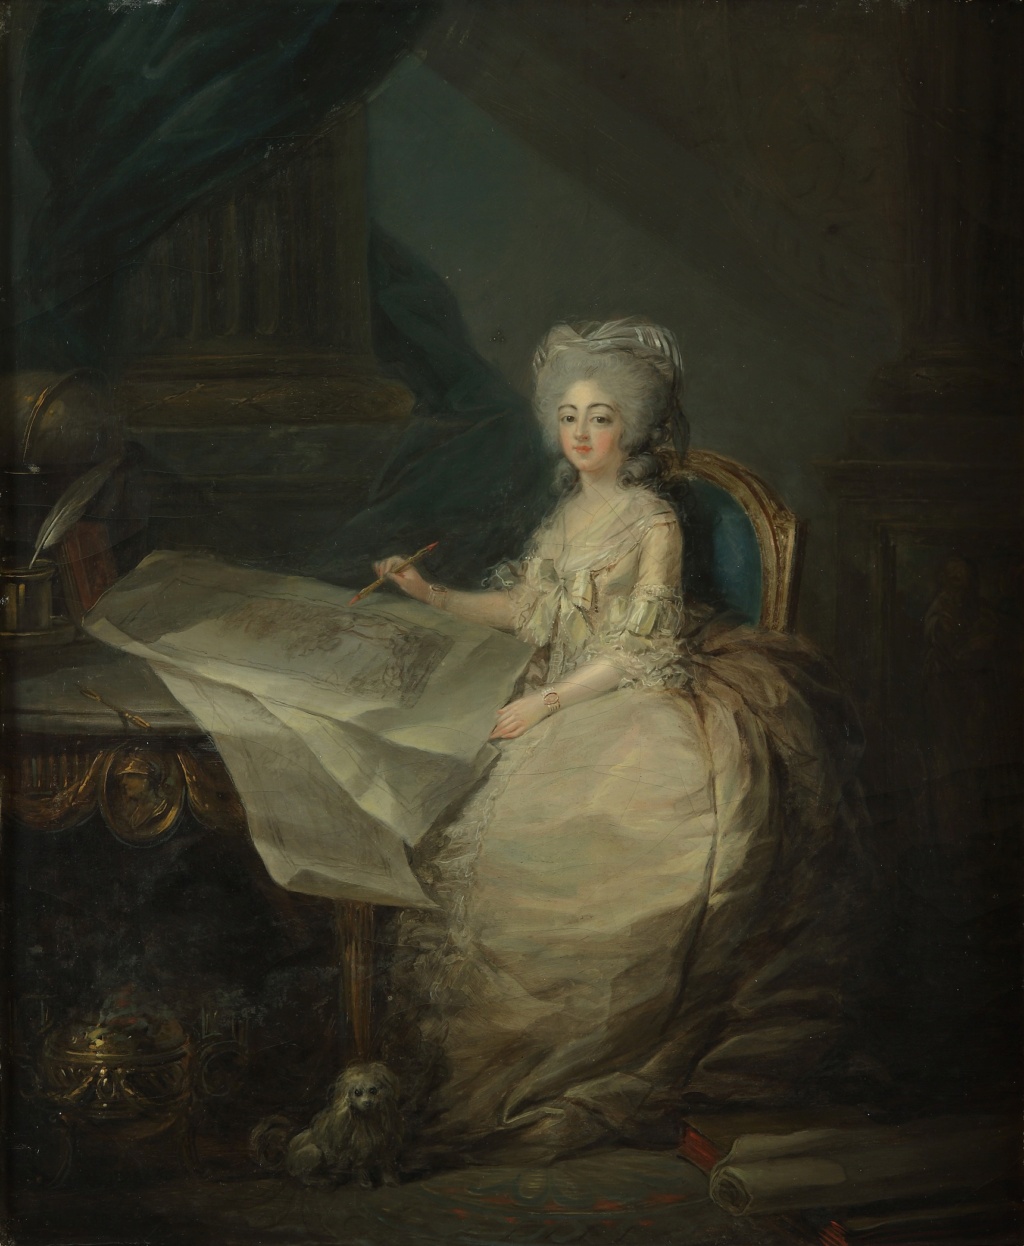 Portraits de Marie-Antoinette et de la famille royale par Charles Le Clercq ou Leclerq - Page 4 Lecler13